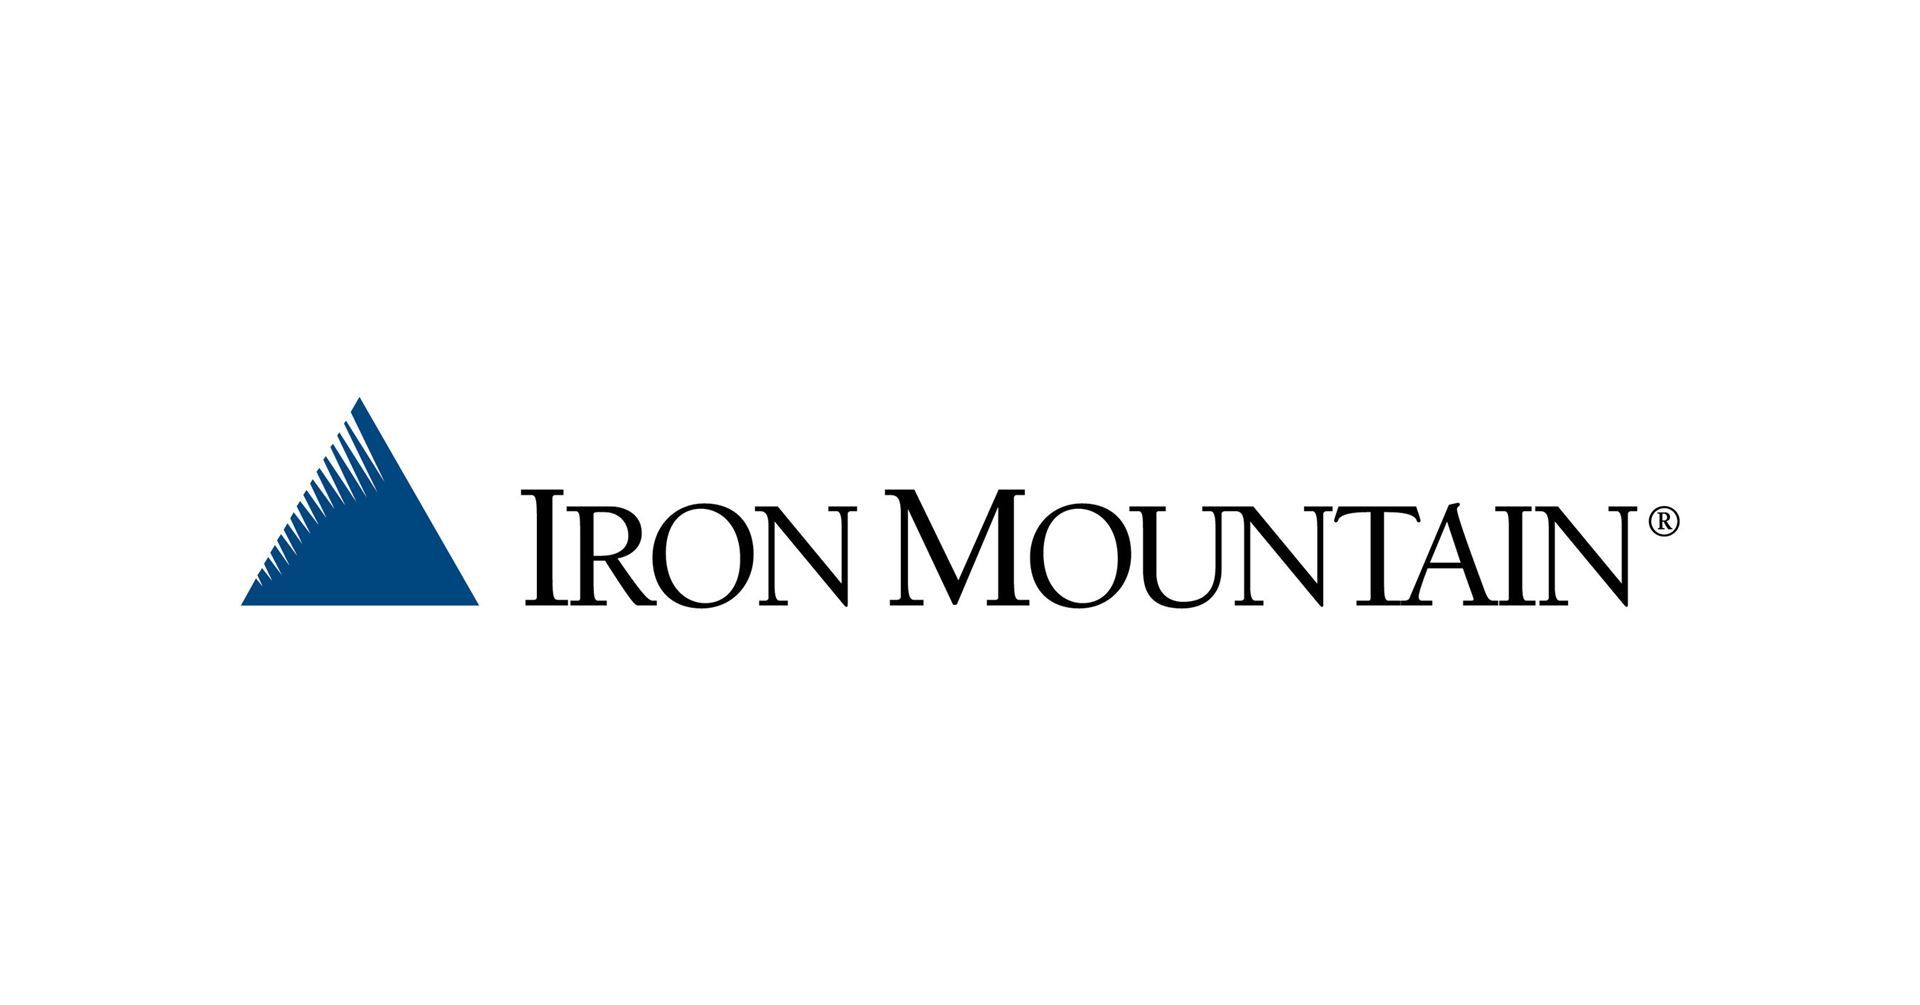 Iron Mountain logo.